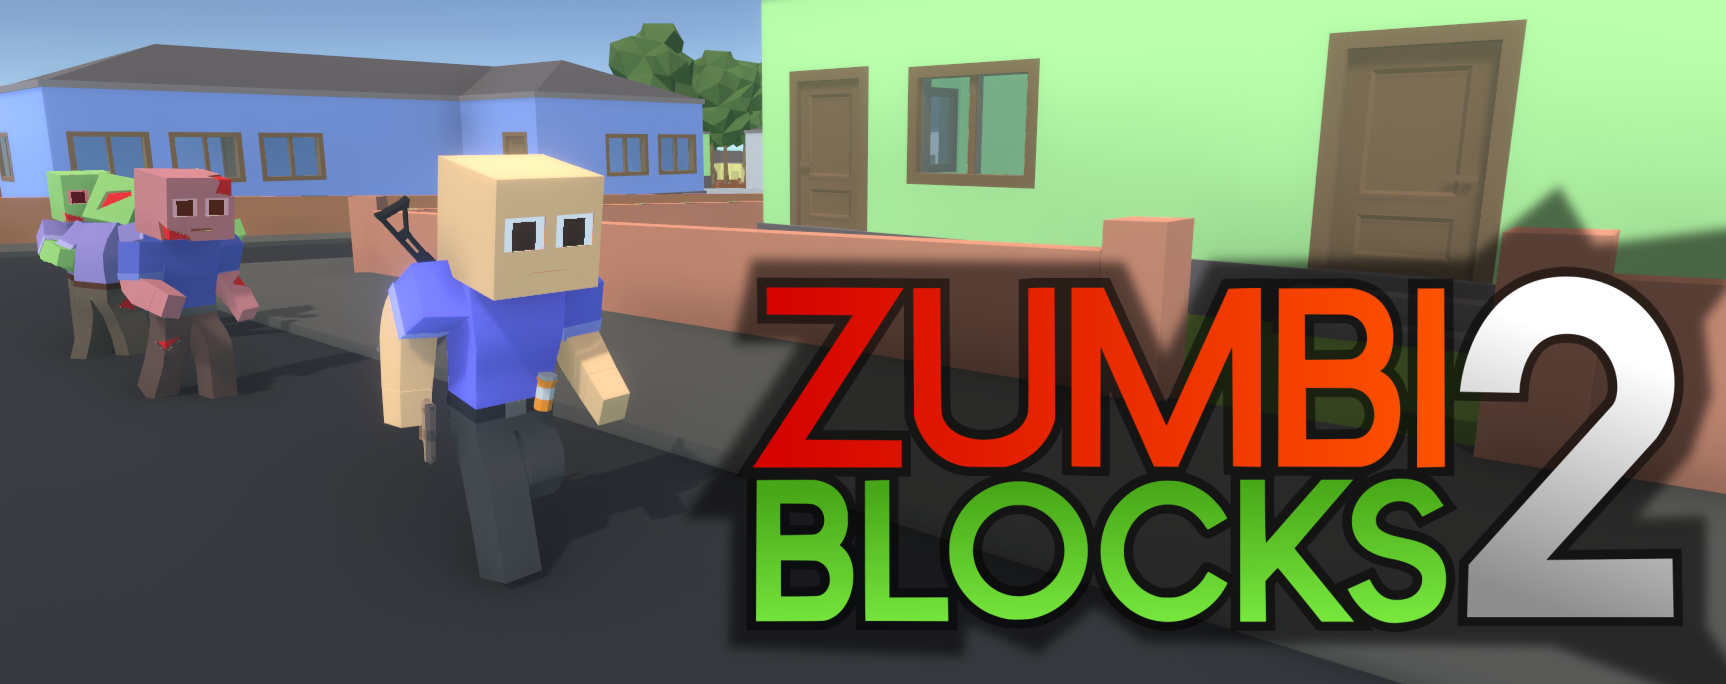 zumbi blocks ultimate 1.0.0